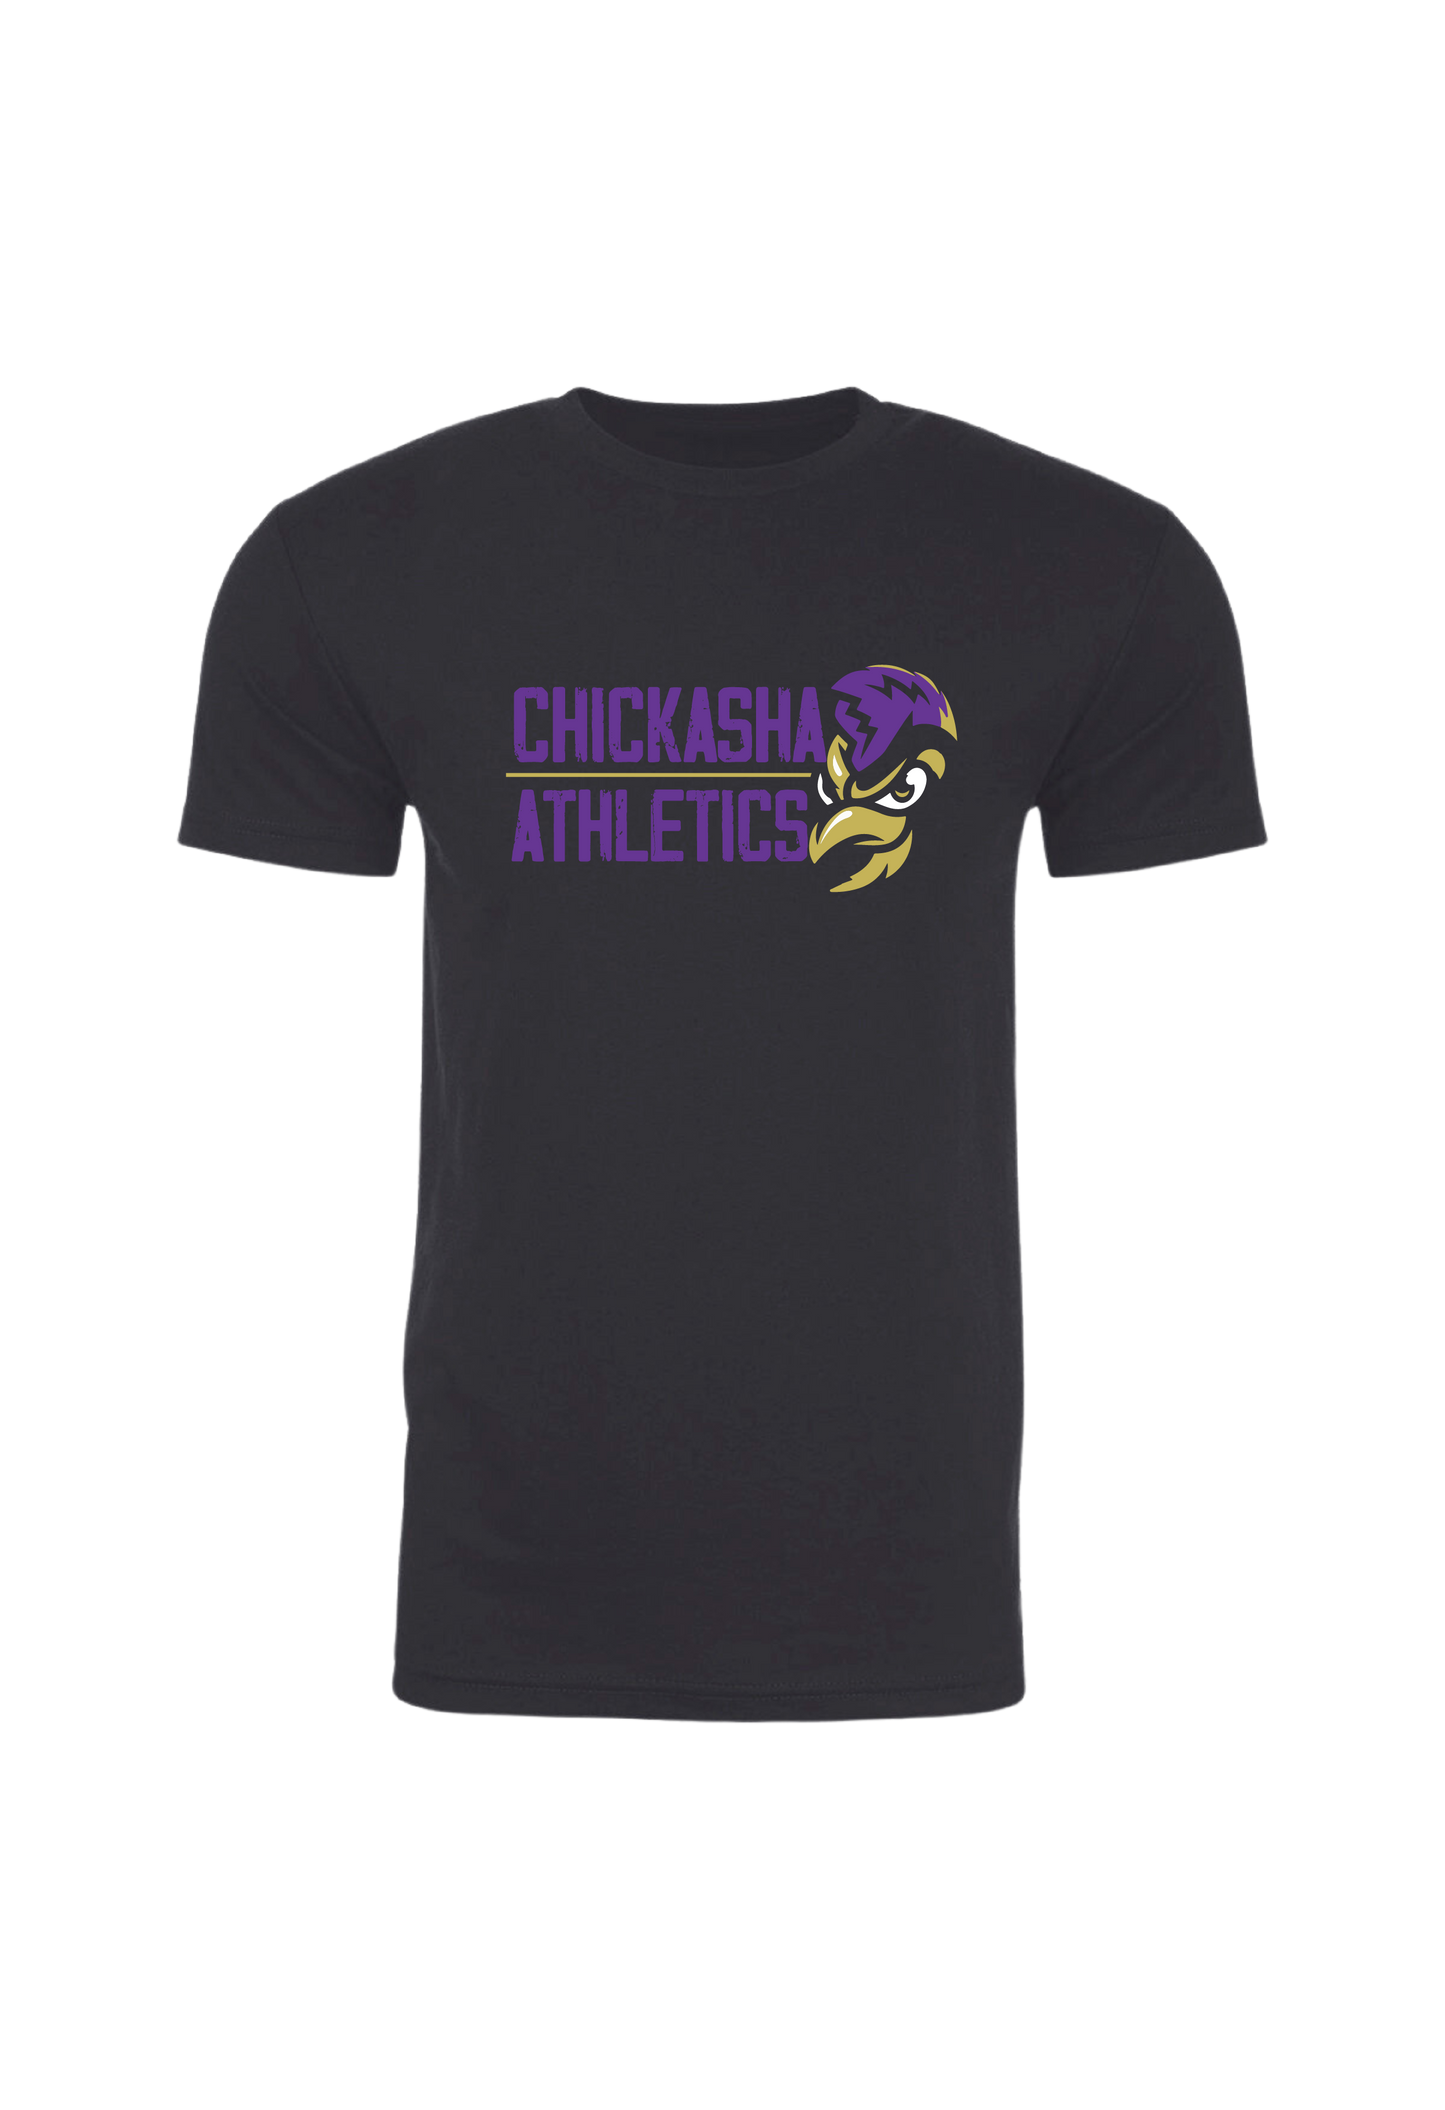 Chickasha Athletics T-Shirt - Black